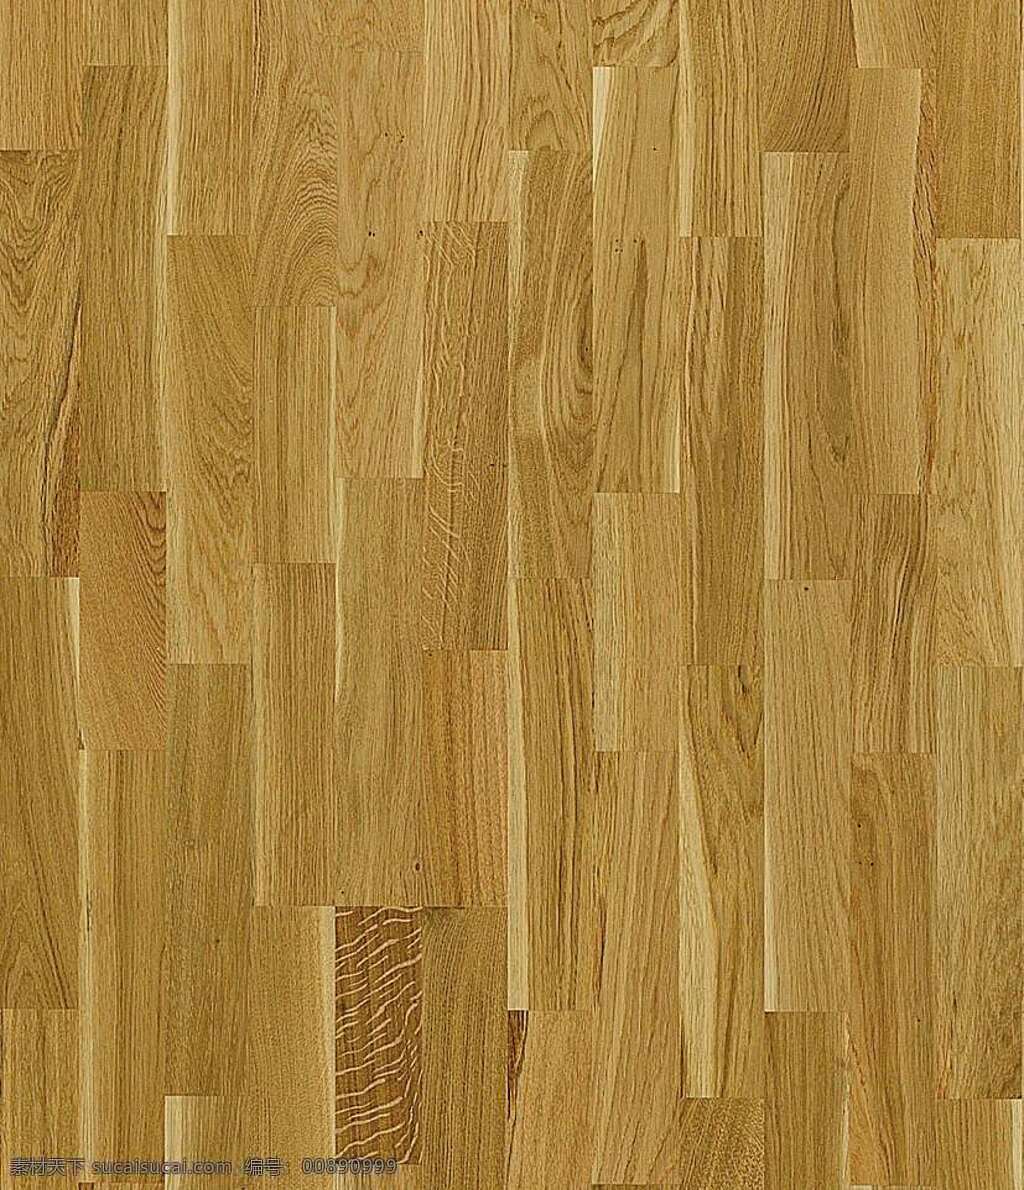 木地板 贴图 木材 木材贴图 木地板贴图 木地板效果图 室内设计 木地板材质 装饰素材 室内装饰用图